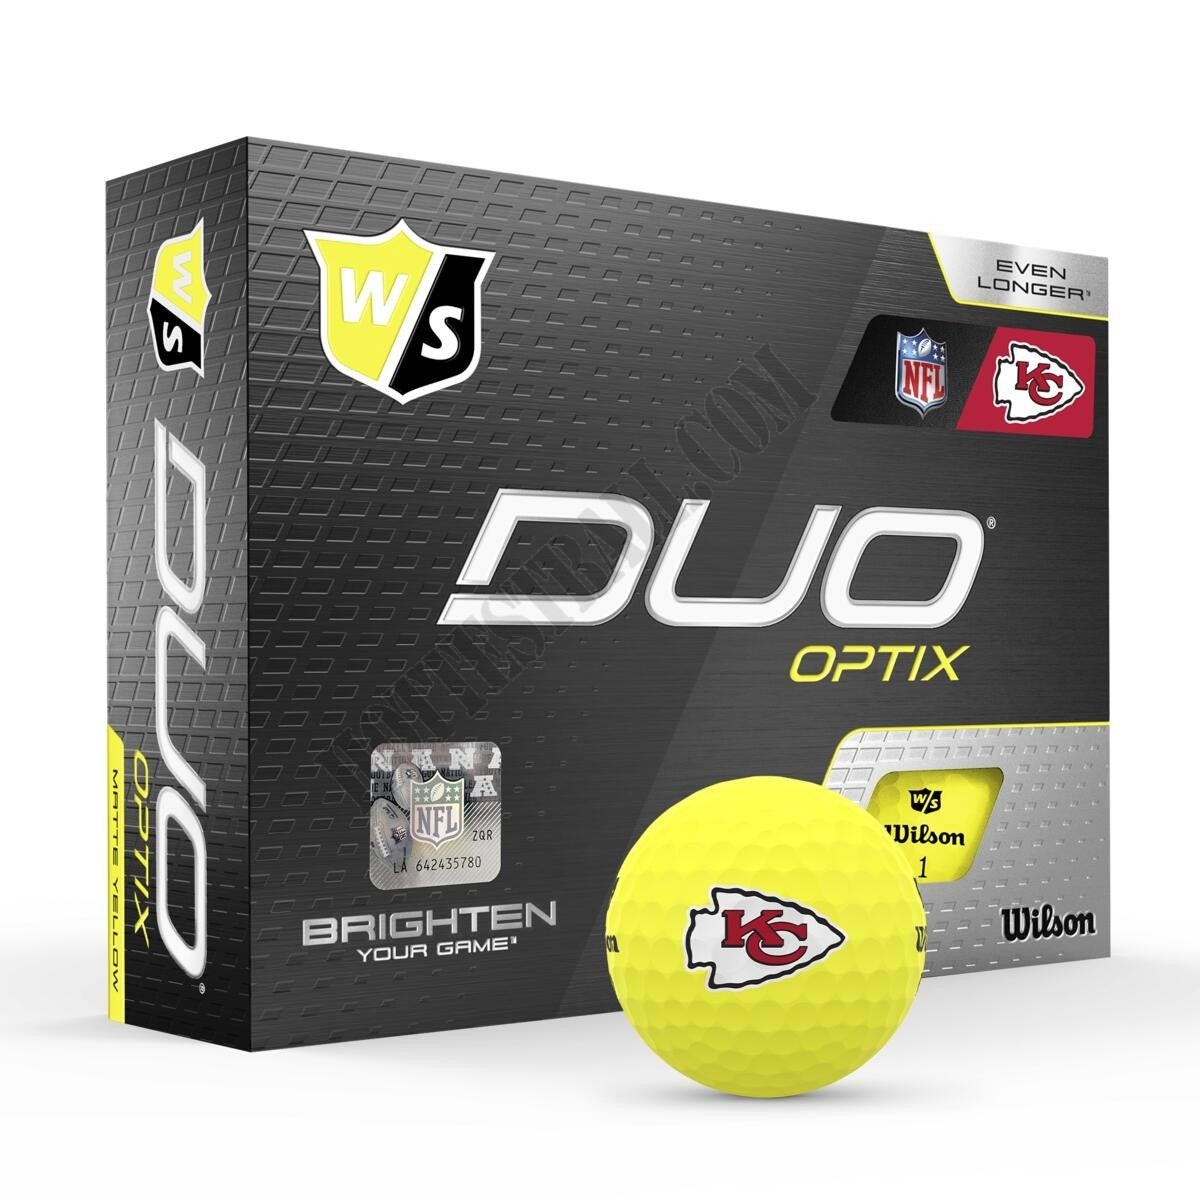 Duo Optix NFL Golf Balls - Kansas City Chiefs ● Wilson Promotions - Duo Optix NFL Golf Balls - Kansas City Chiefs ● Wilson Promotions